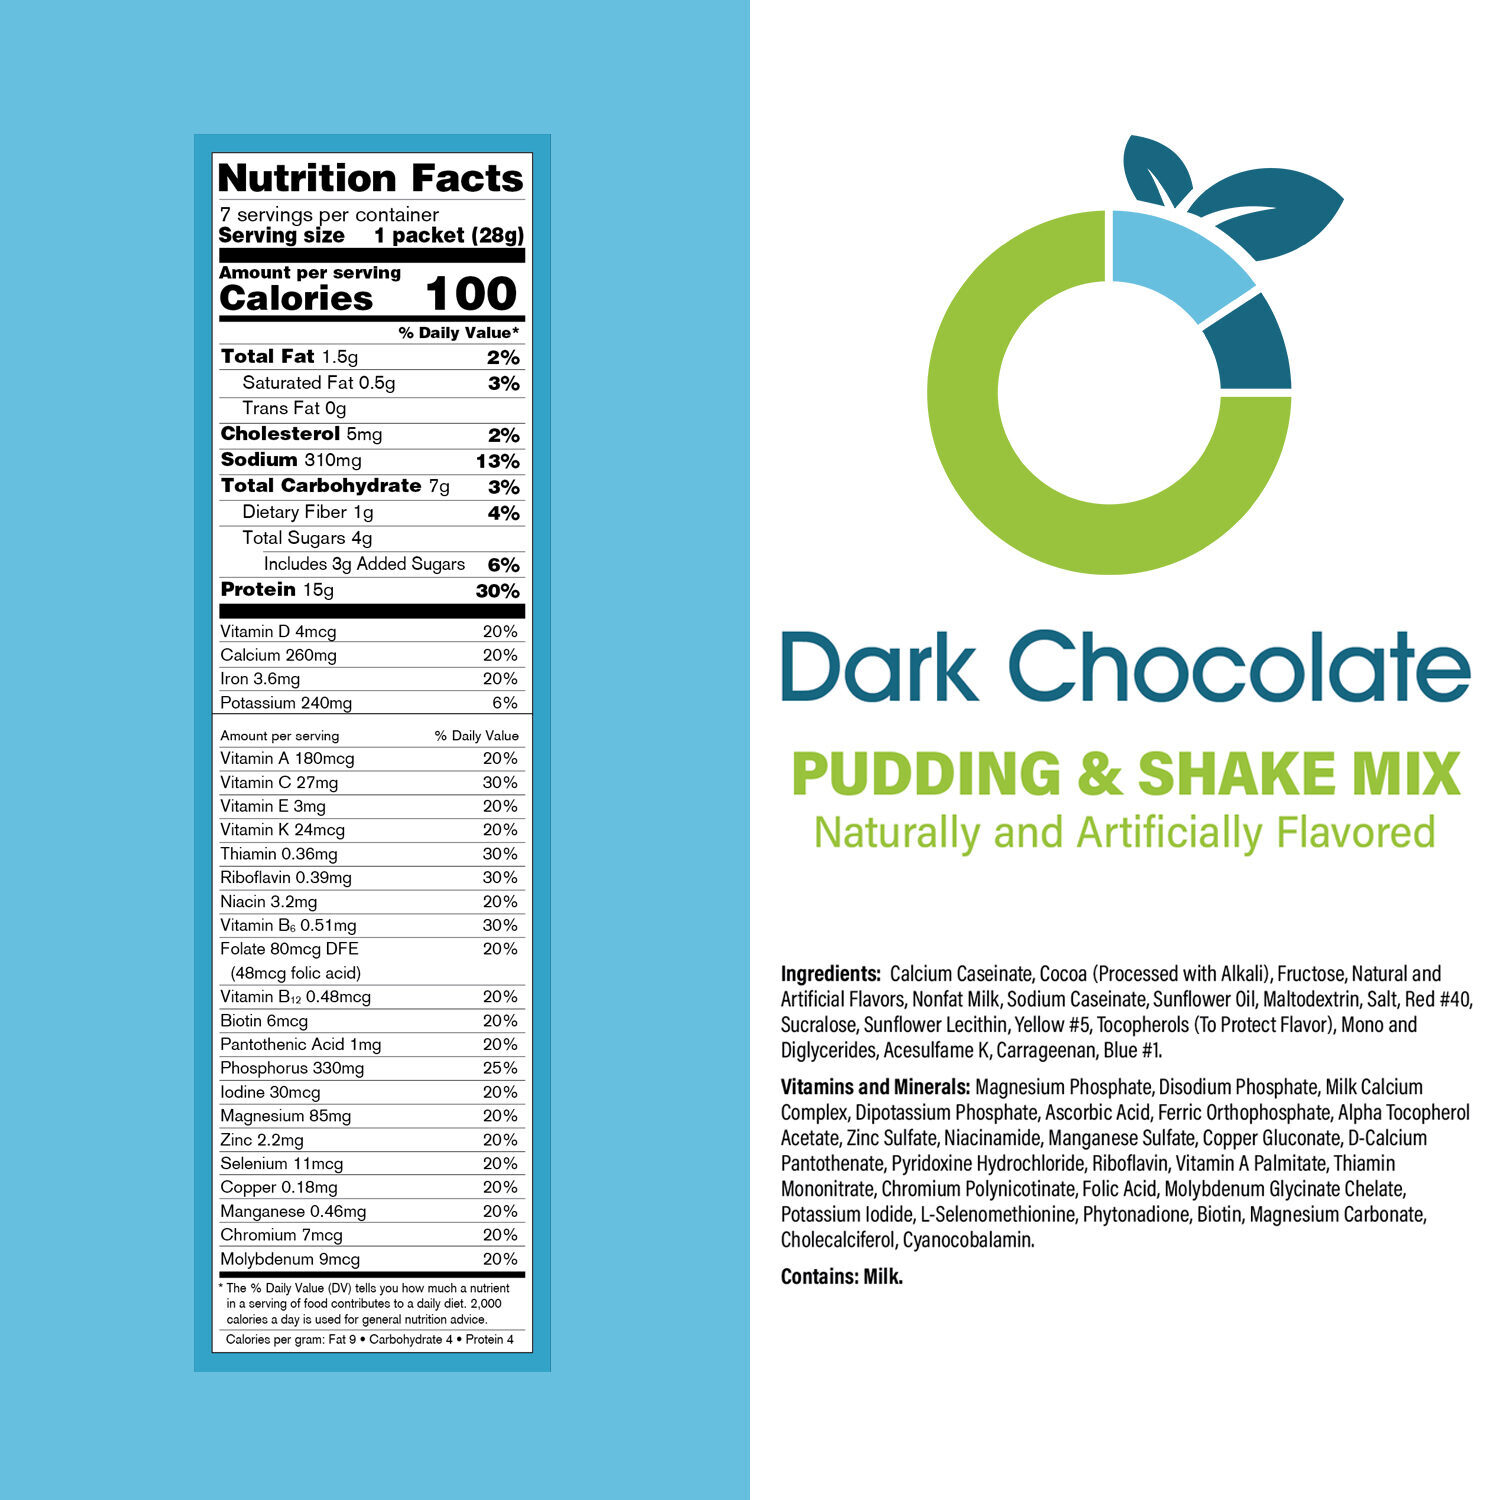 Dark-Chocolate-Pudding-Shake-Mix-Panel_05dc05dc0_78769